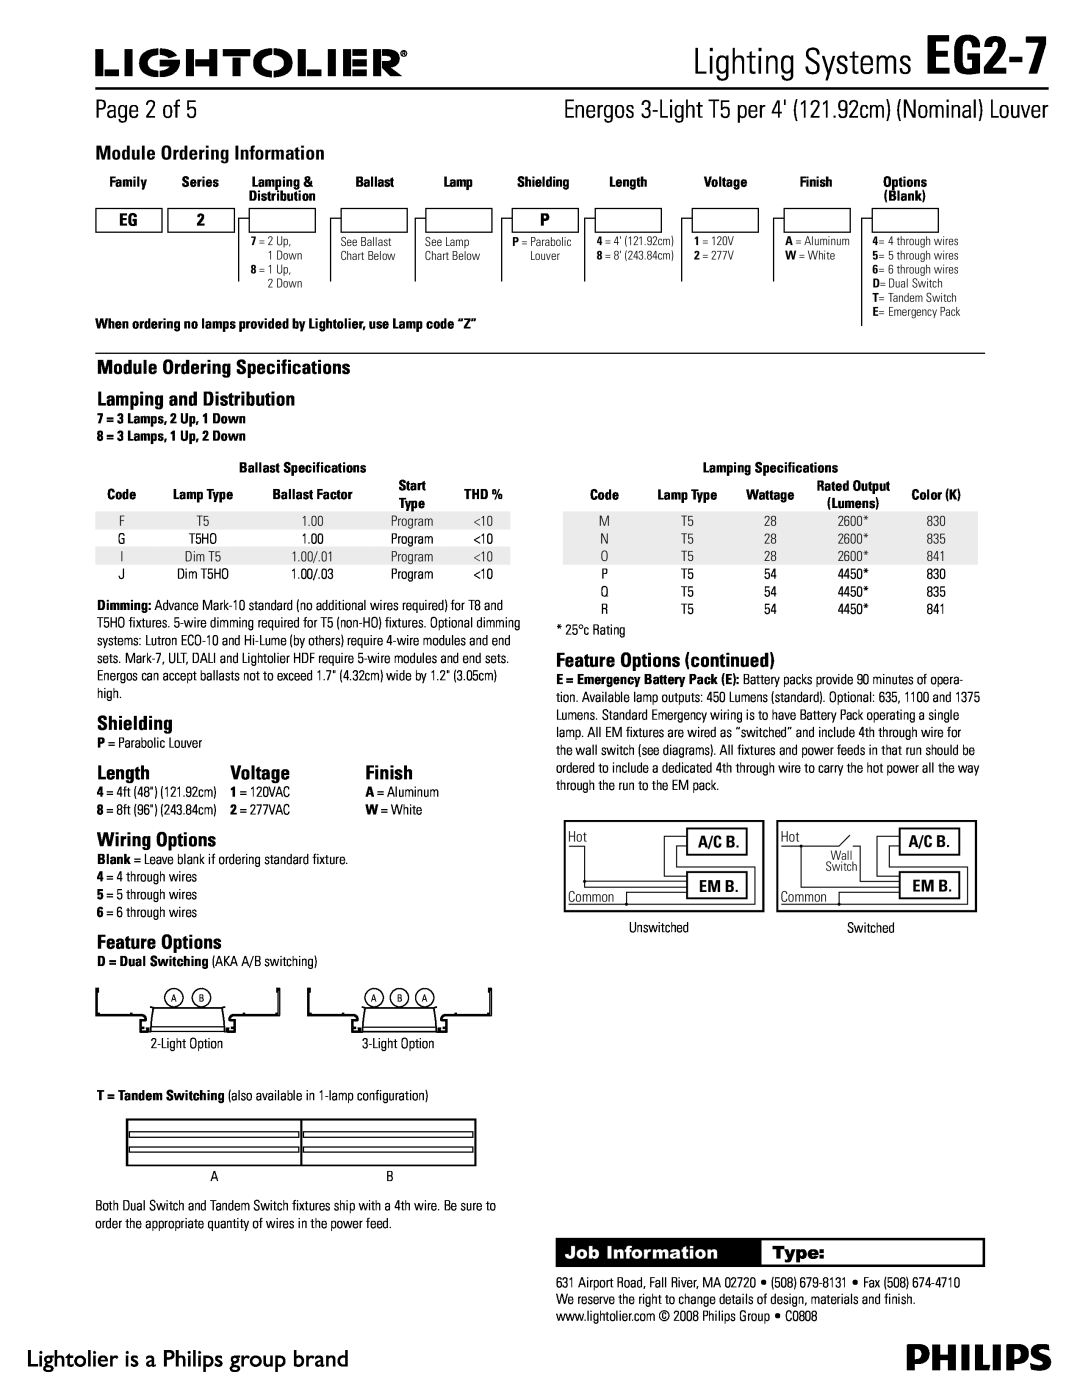 Lightolier specifications 1BHFPG, Lighting Systems EG2-7 